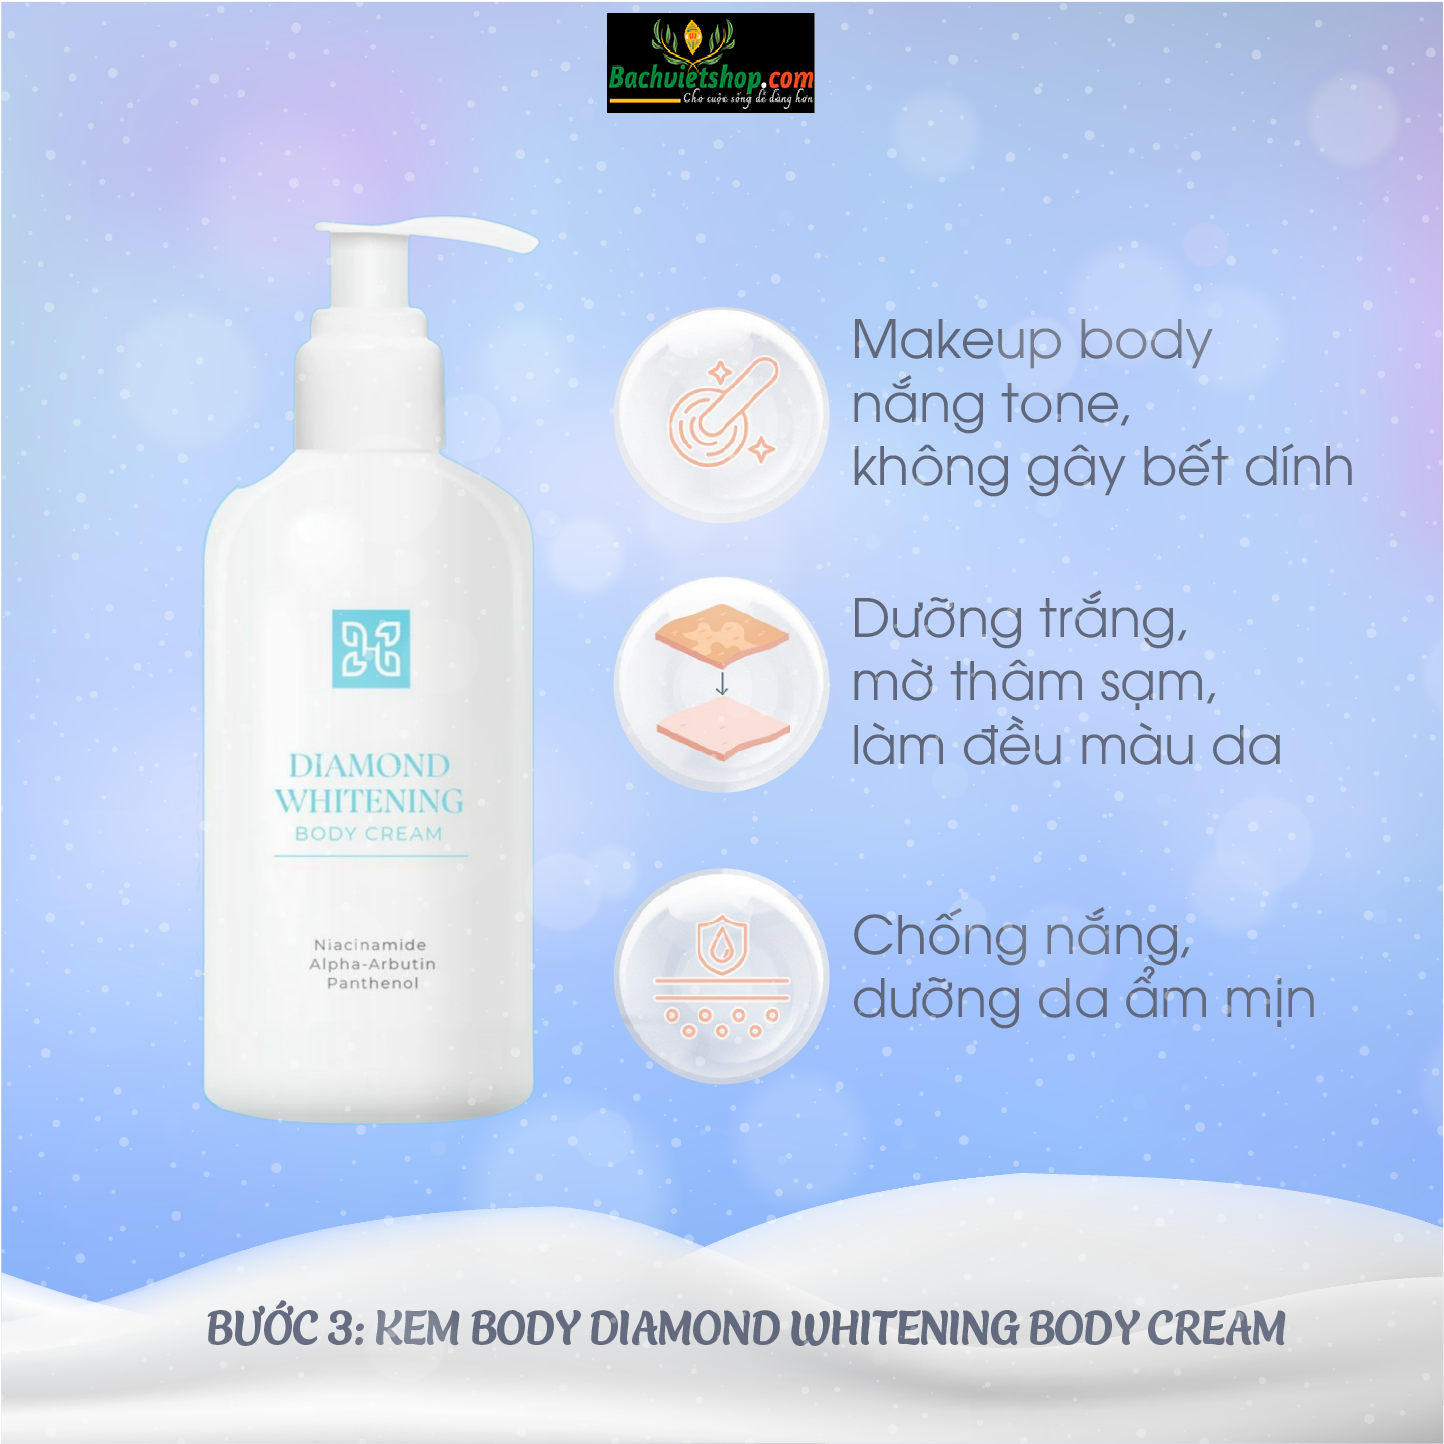 Heshi Diamond Whitening Body Cream - Tự hào mang đến cho phụ nữ một làn da sáng khoẻ mịn màng không tì vết!